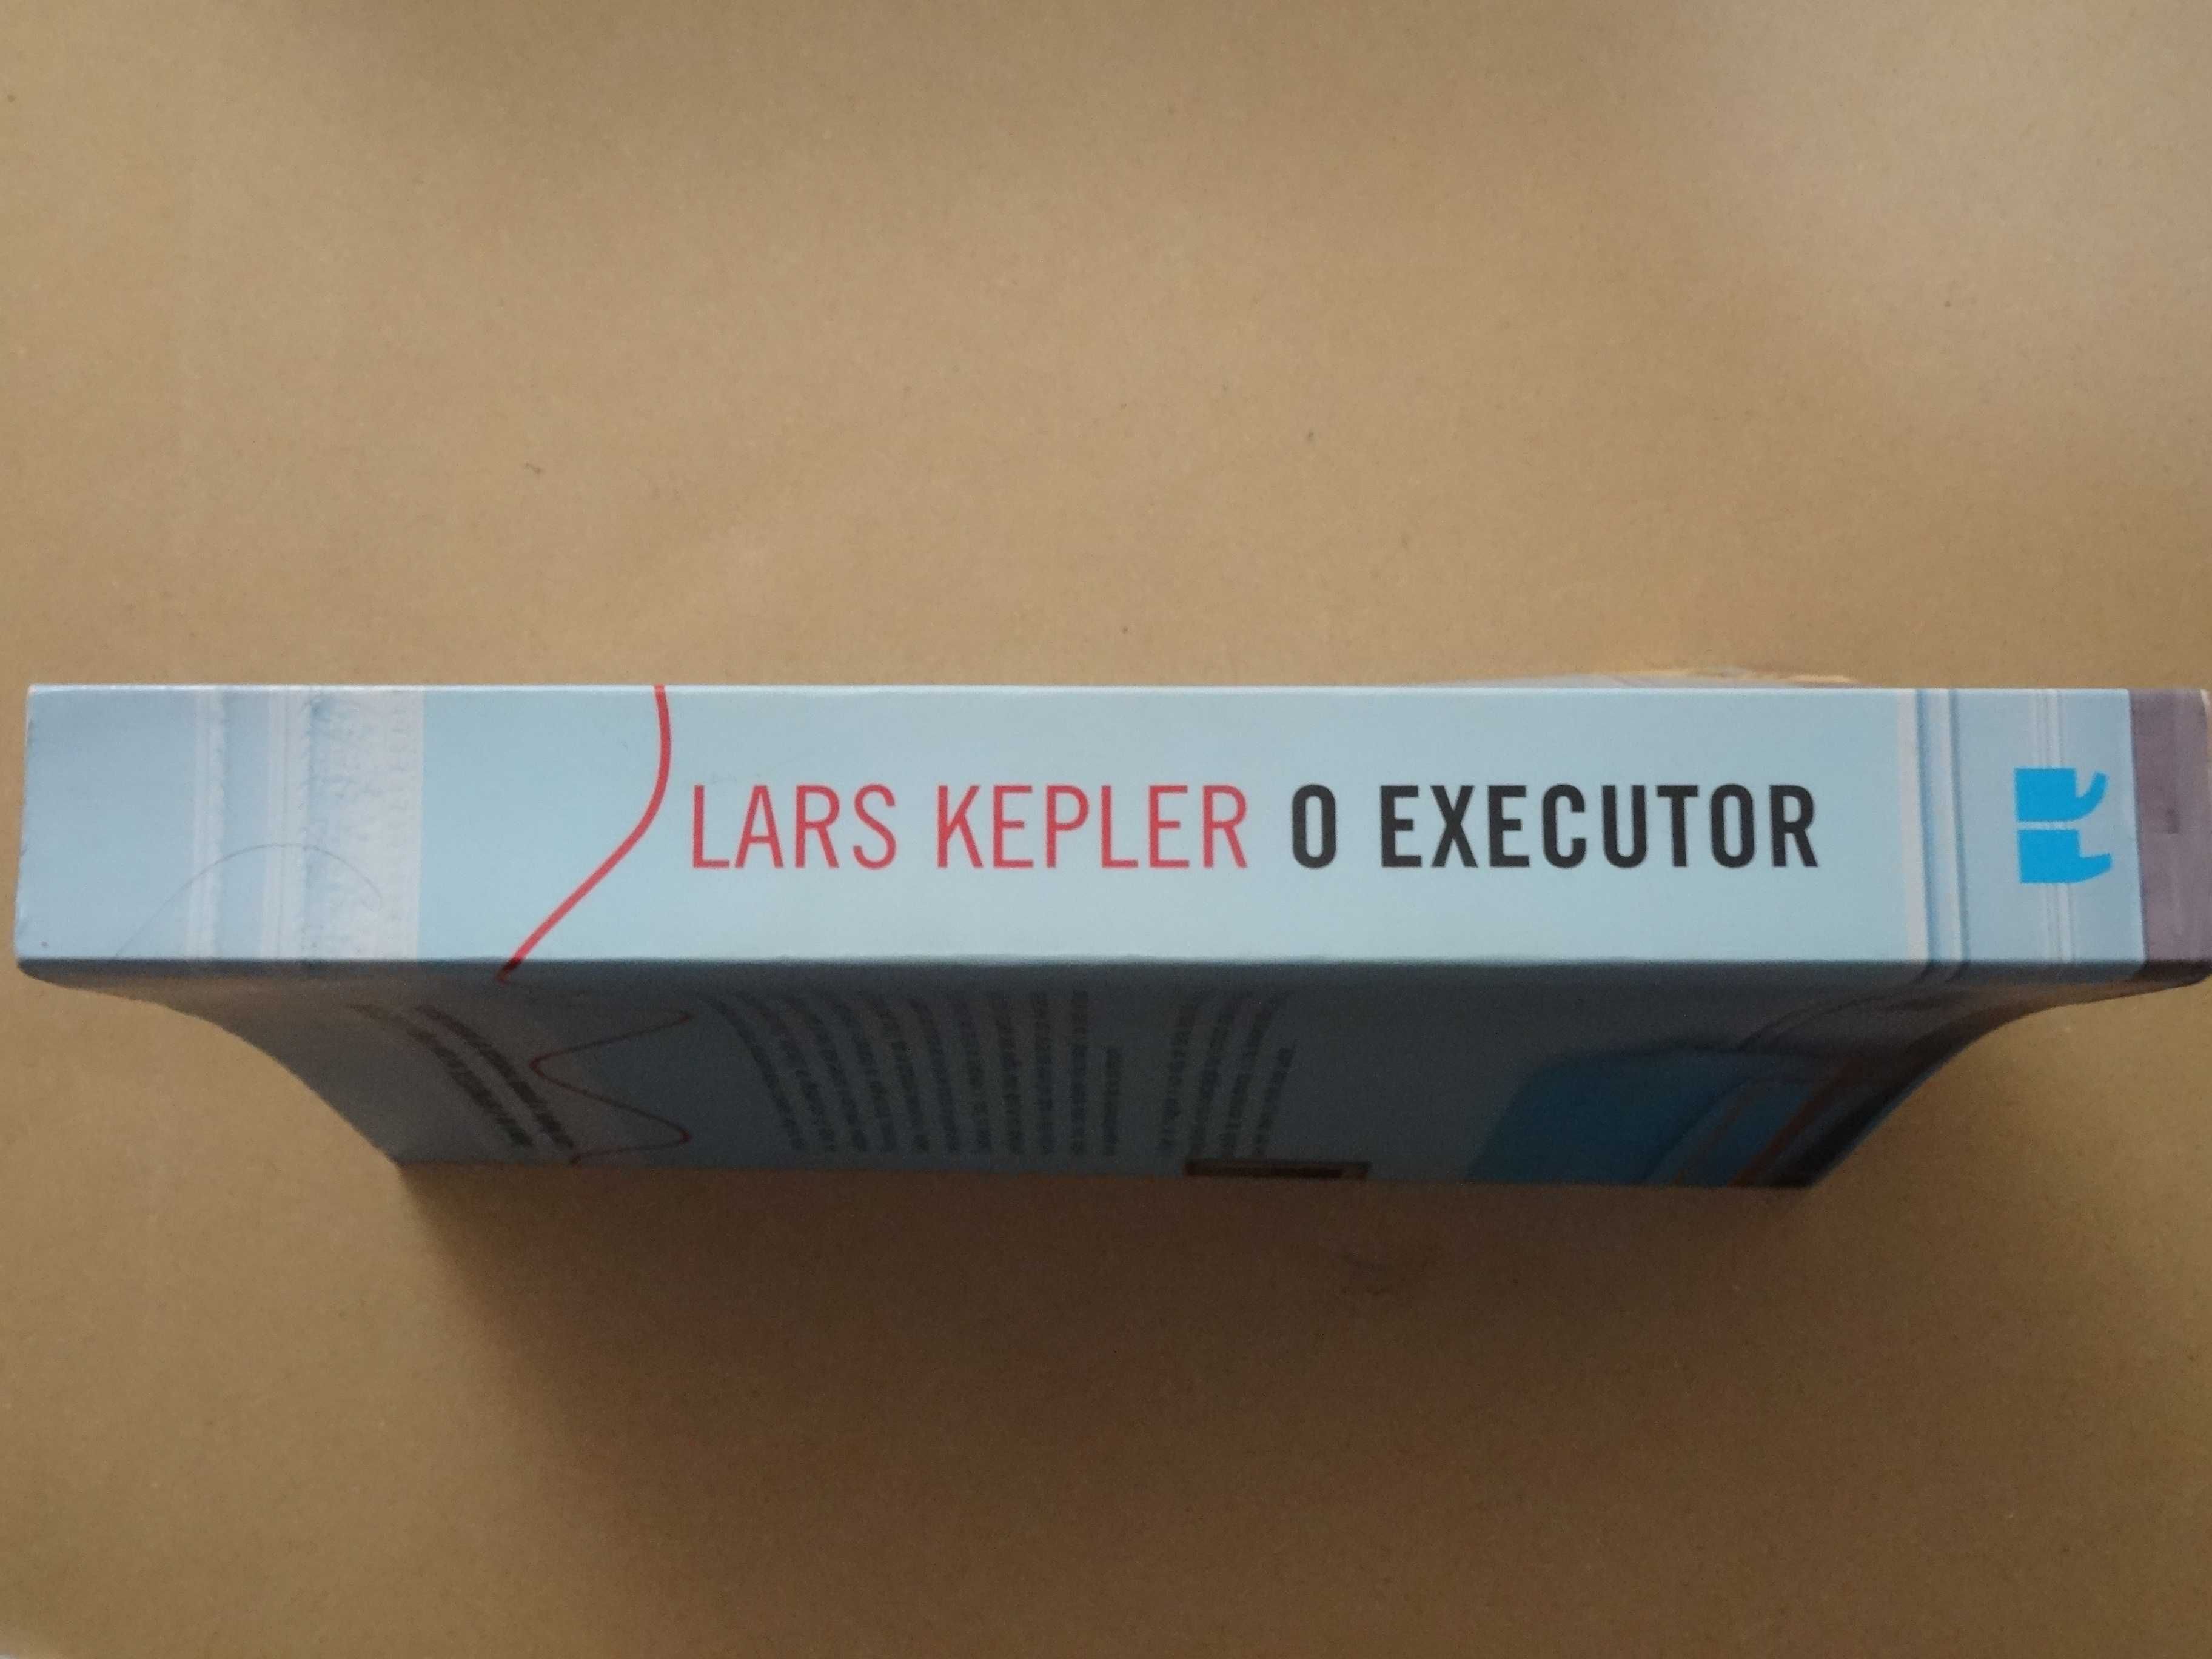 O Executor de Lars Kepler - 1ª Edição